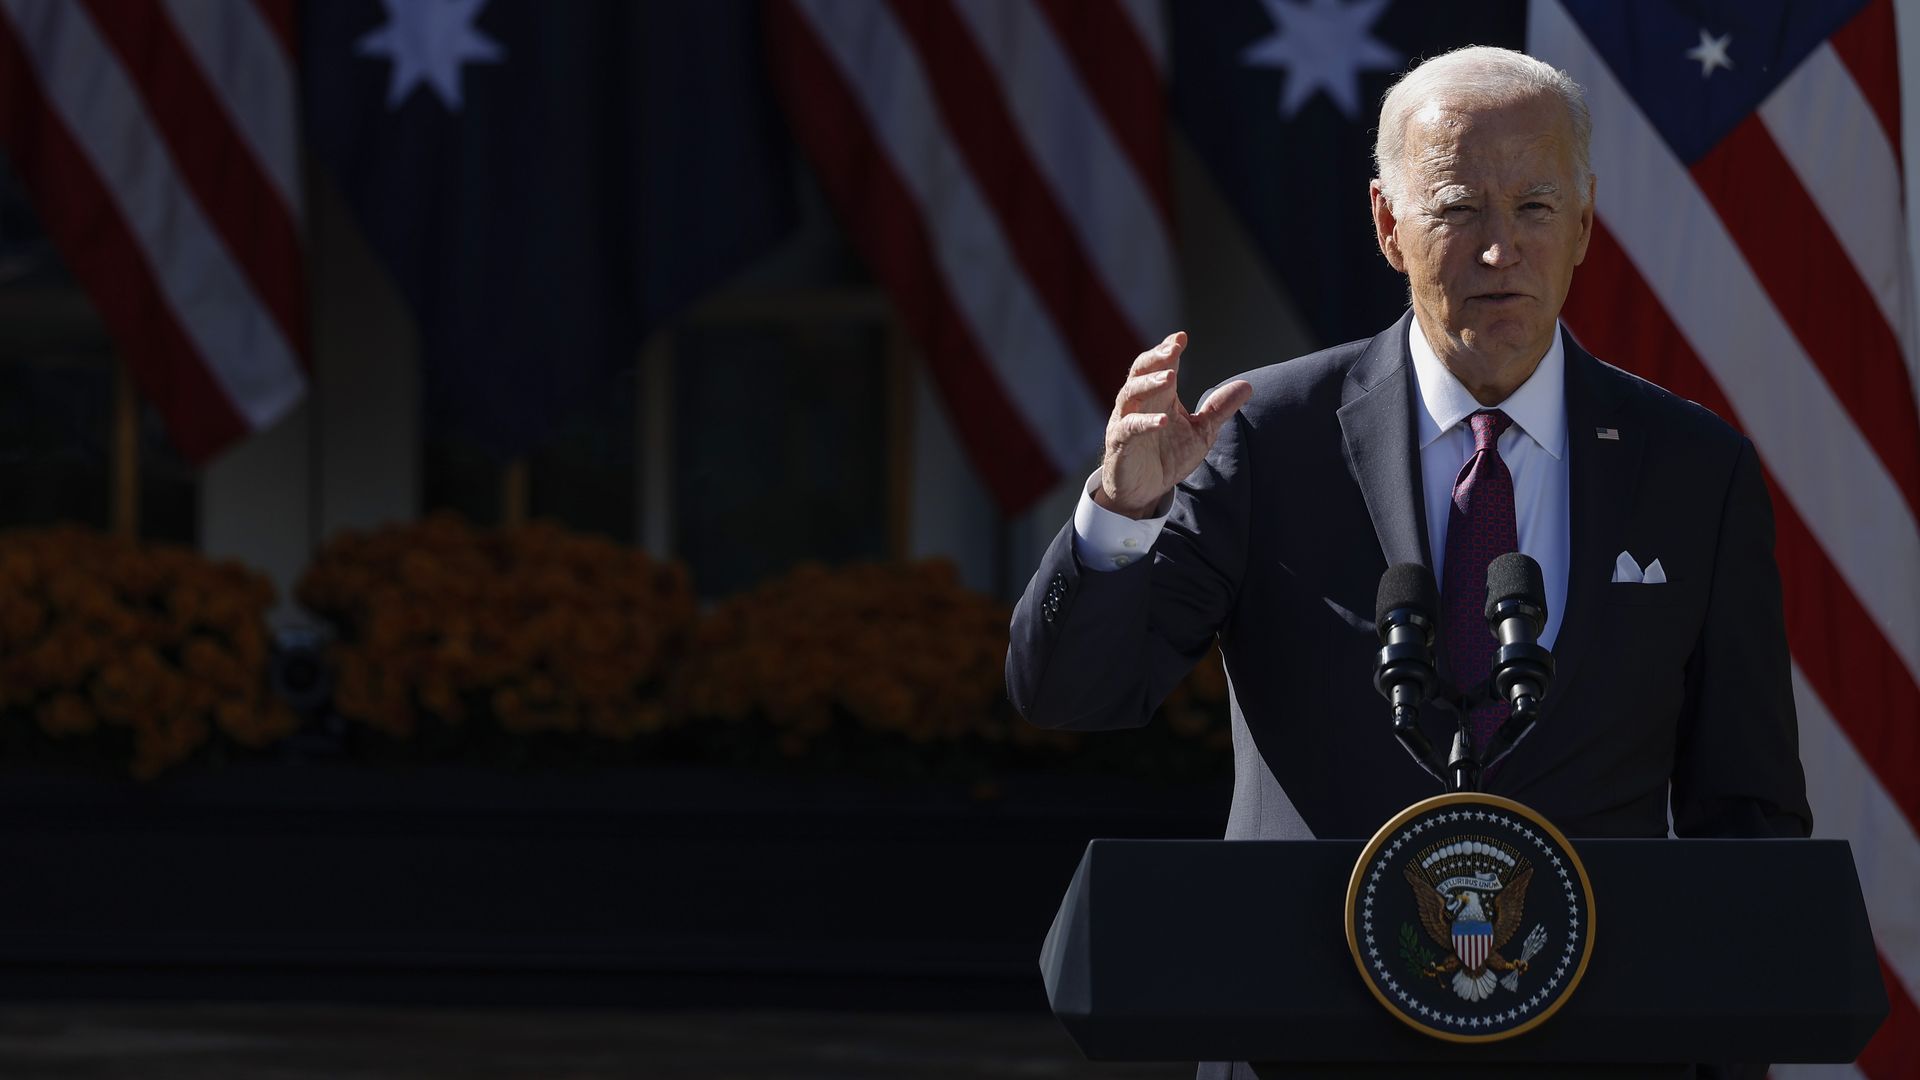 President Biden speaks in the Rose Garden on Wednesday